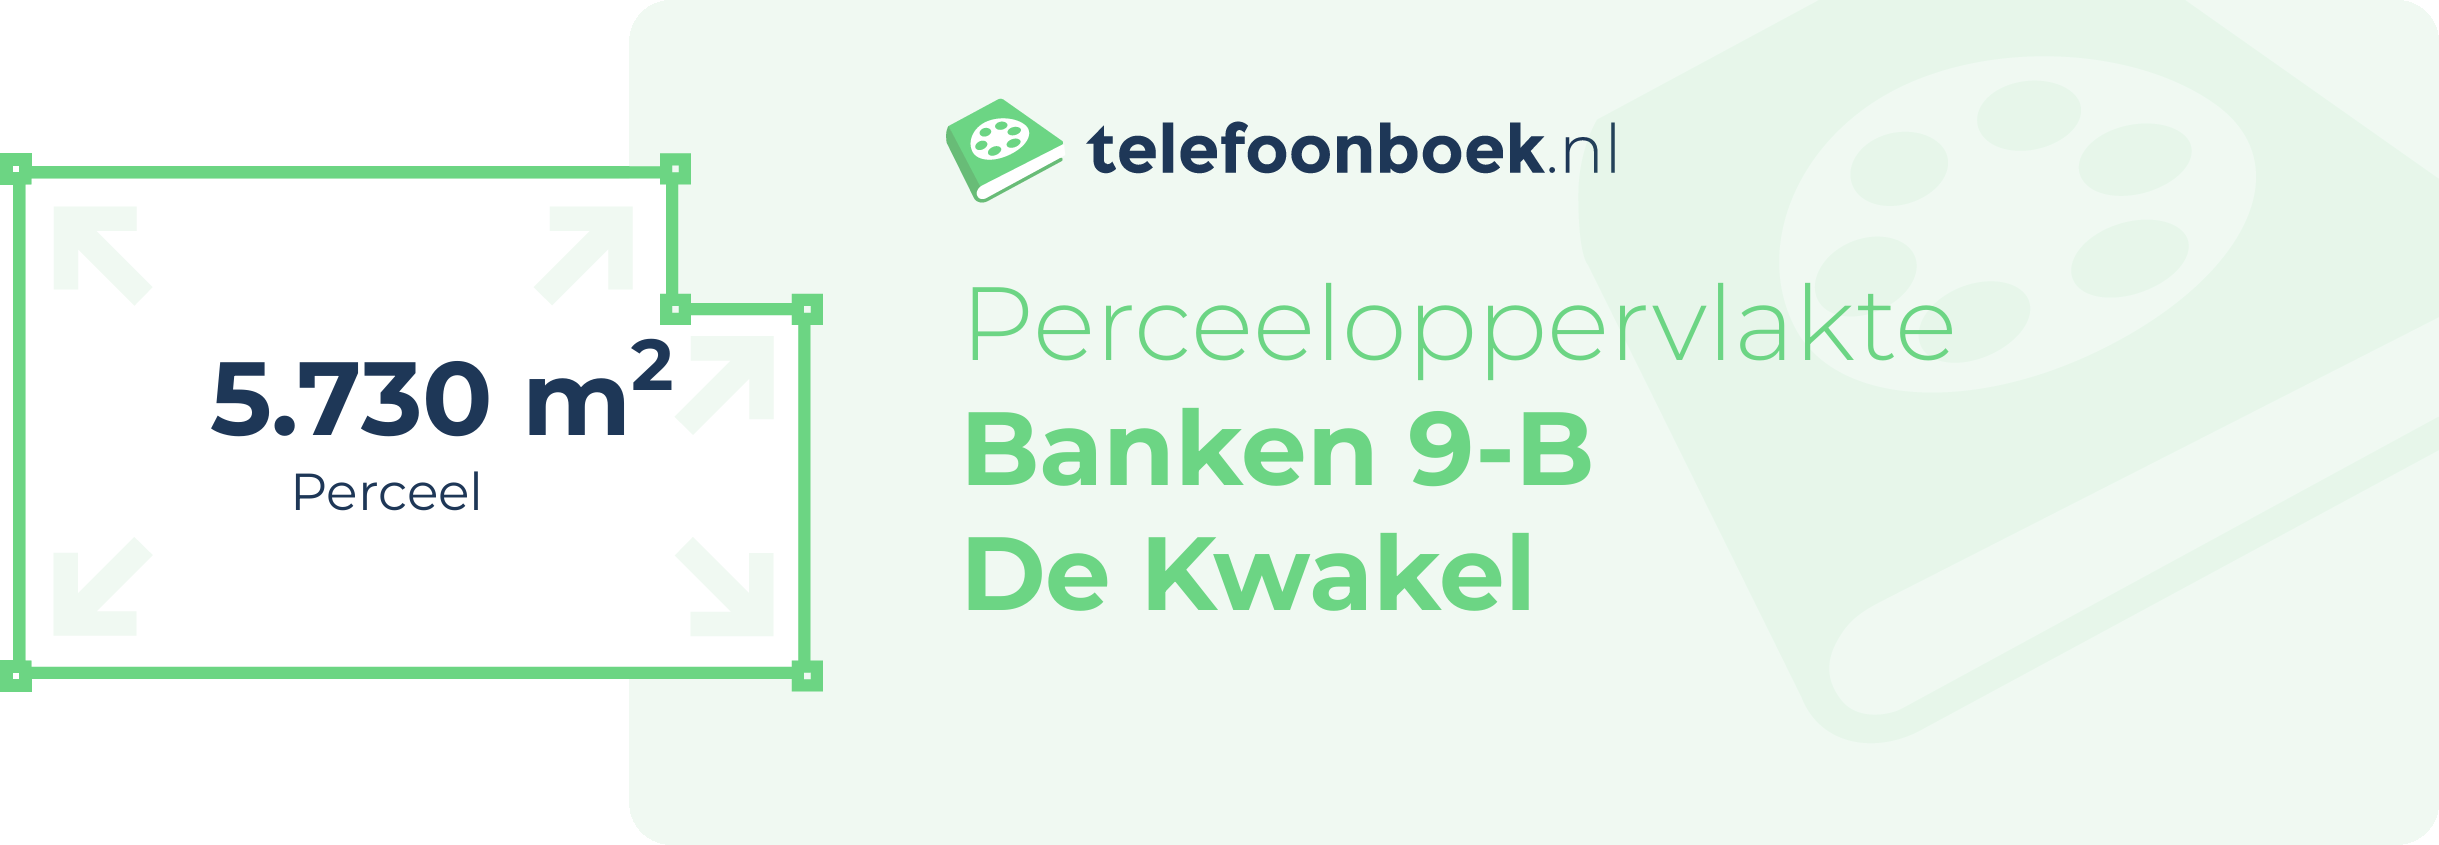 Perceeloppervlakte Banken 9-B De Kwakel